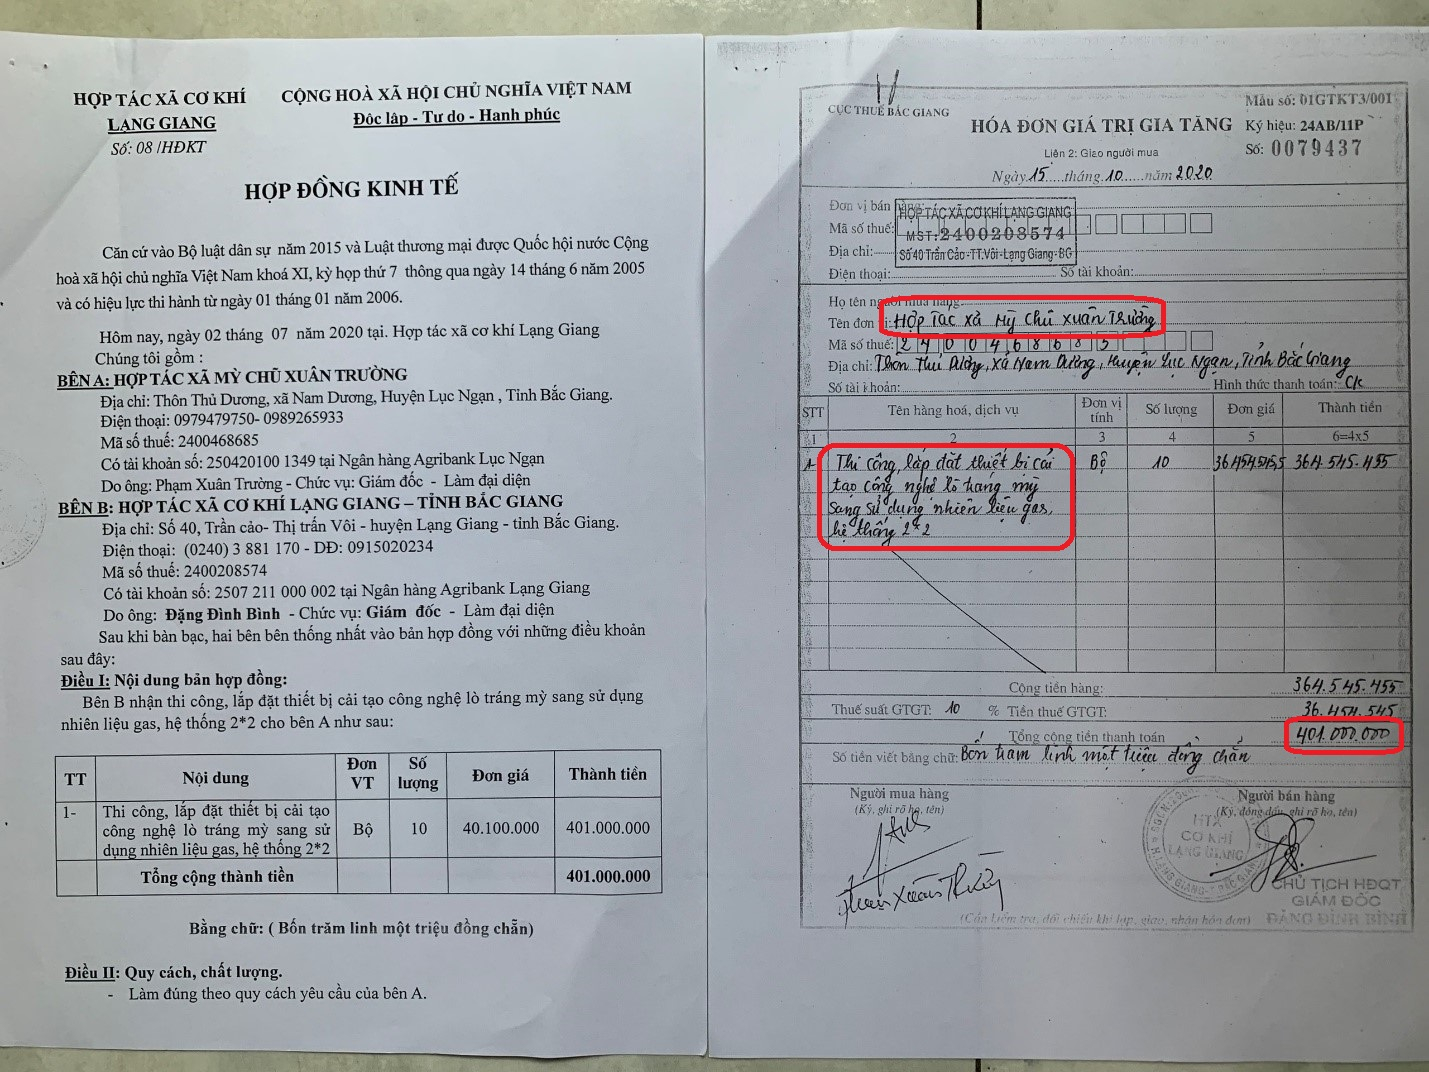 Ông Đặng Đình Bình, Giám đốc HTX Cơ khí Lạng Giang thừa nhận, không được thi công hệ thống tráng mỳ bằng gas nhưng vẫn xuất hóa đơn cho HTX Xuân Trường.